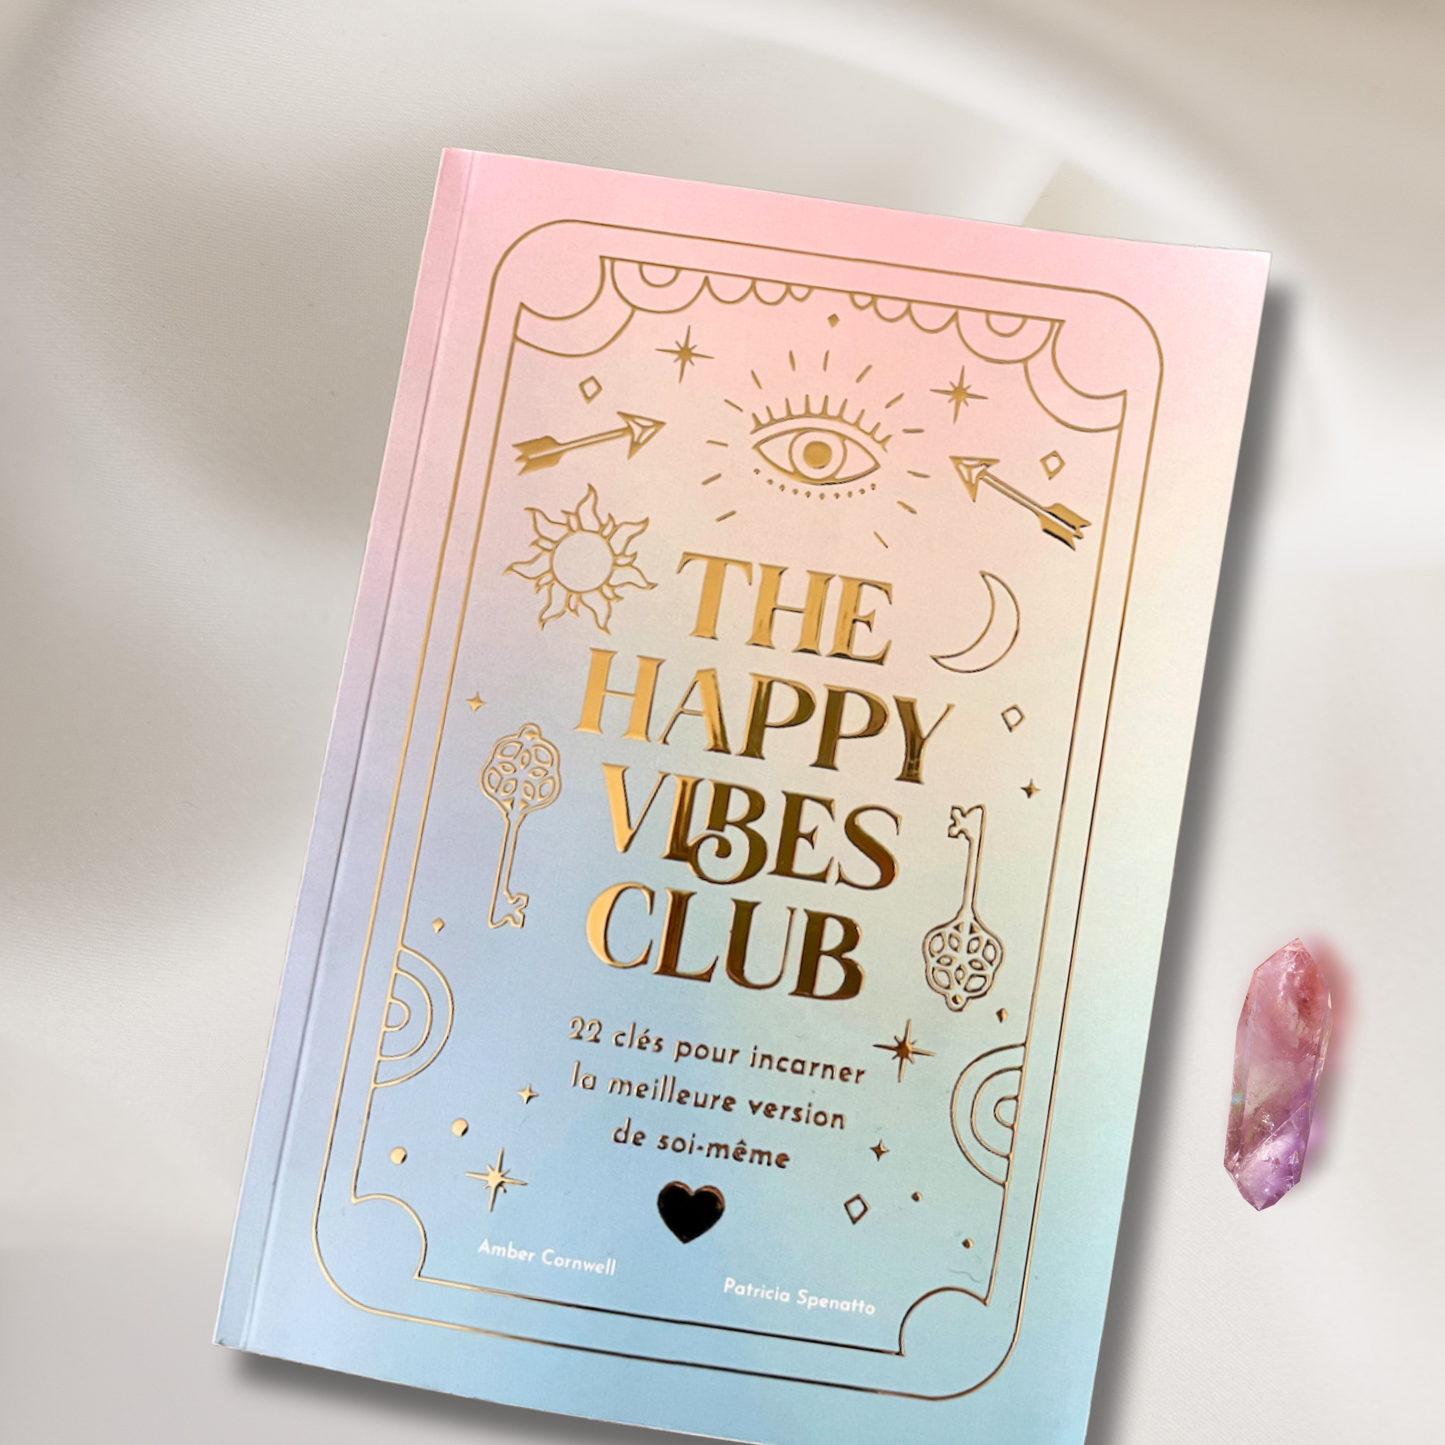 The Happy Vibes Club - 22 clés pour incarner la meilleure version de soi-même. (VOL.1)